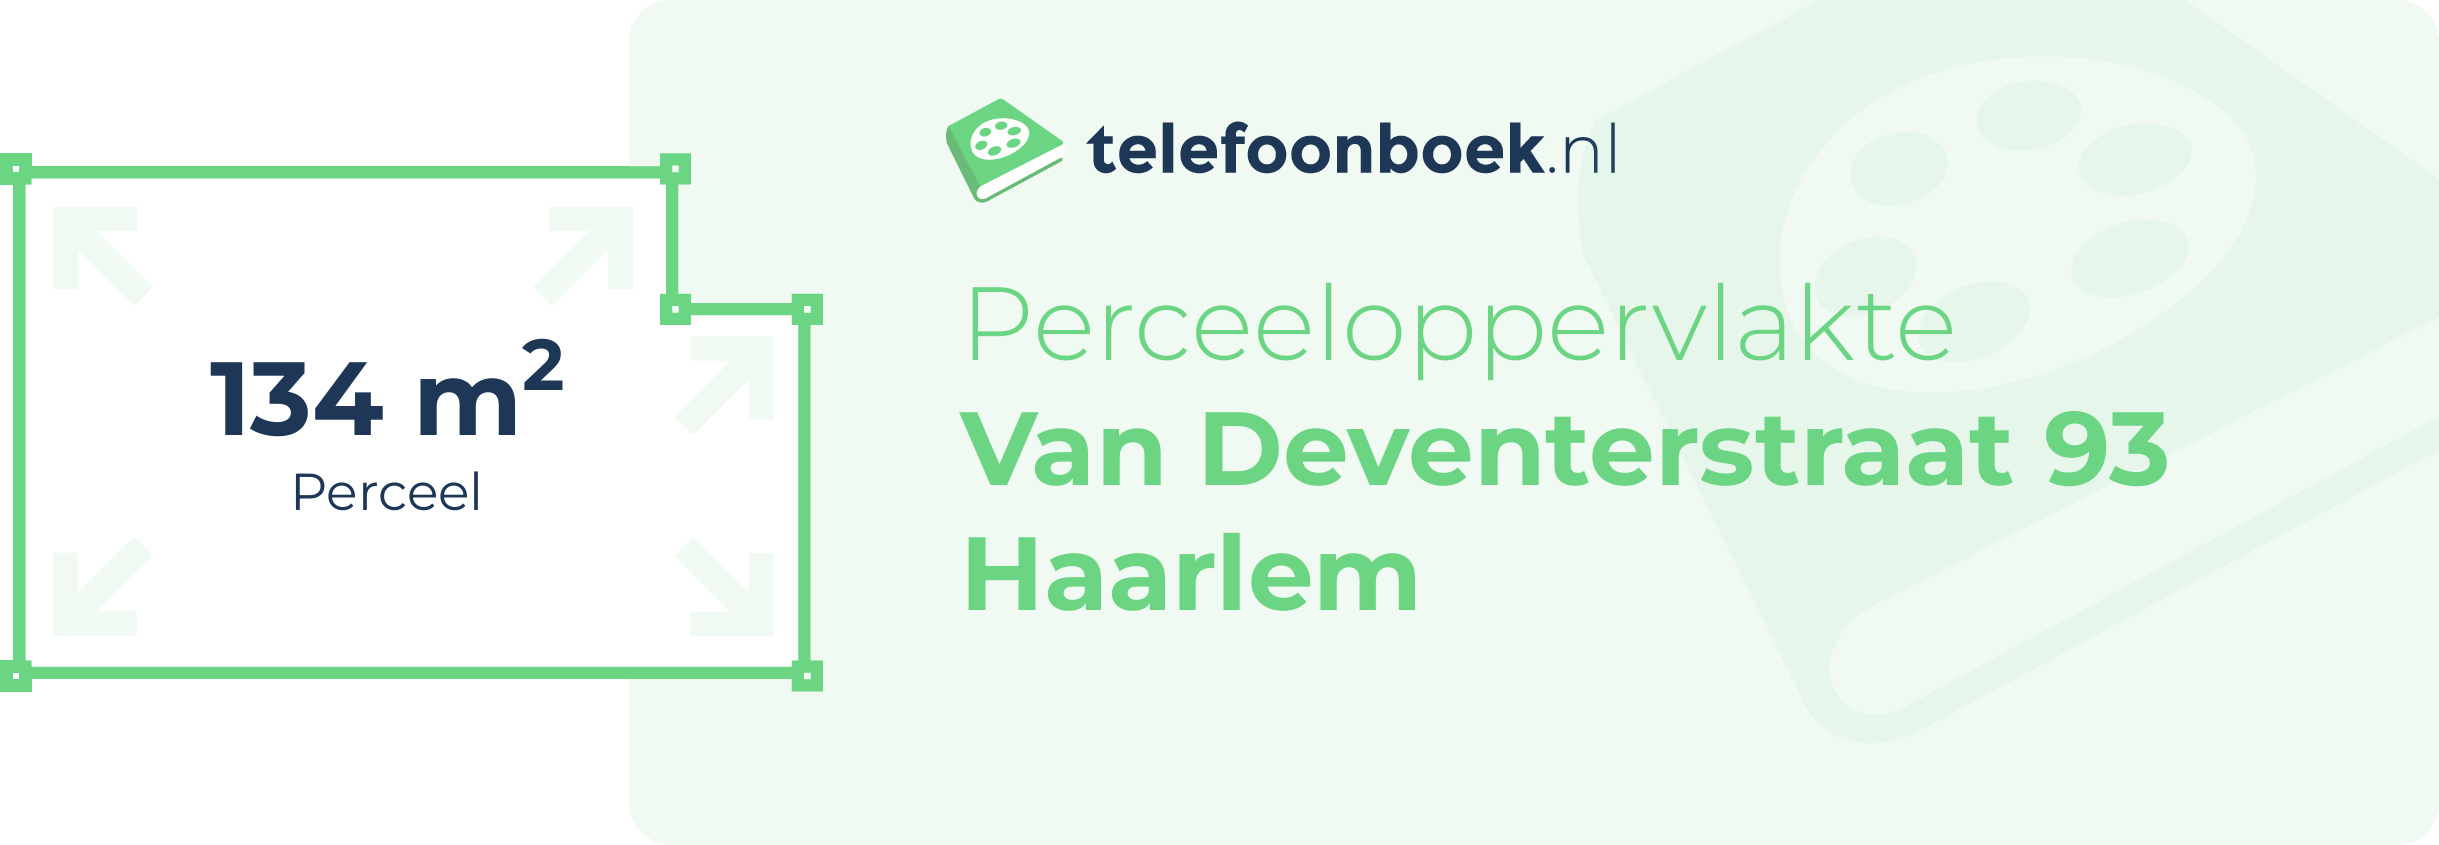 Perceeloppervlakte Van Deventerstraat 93 Haarlem